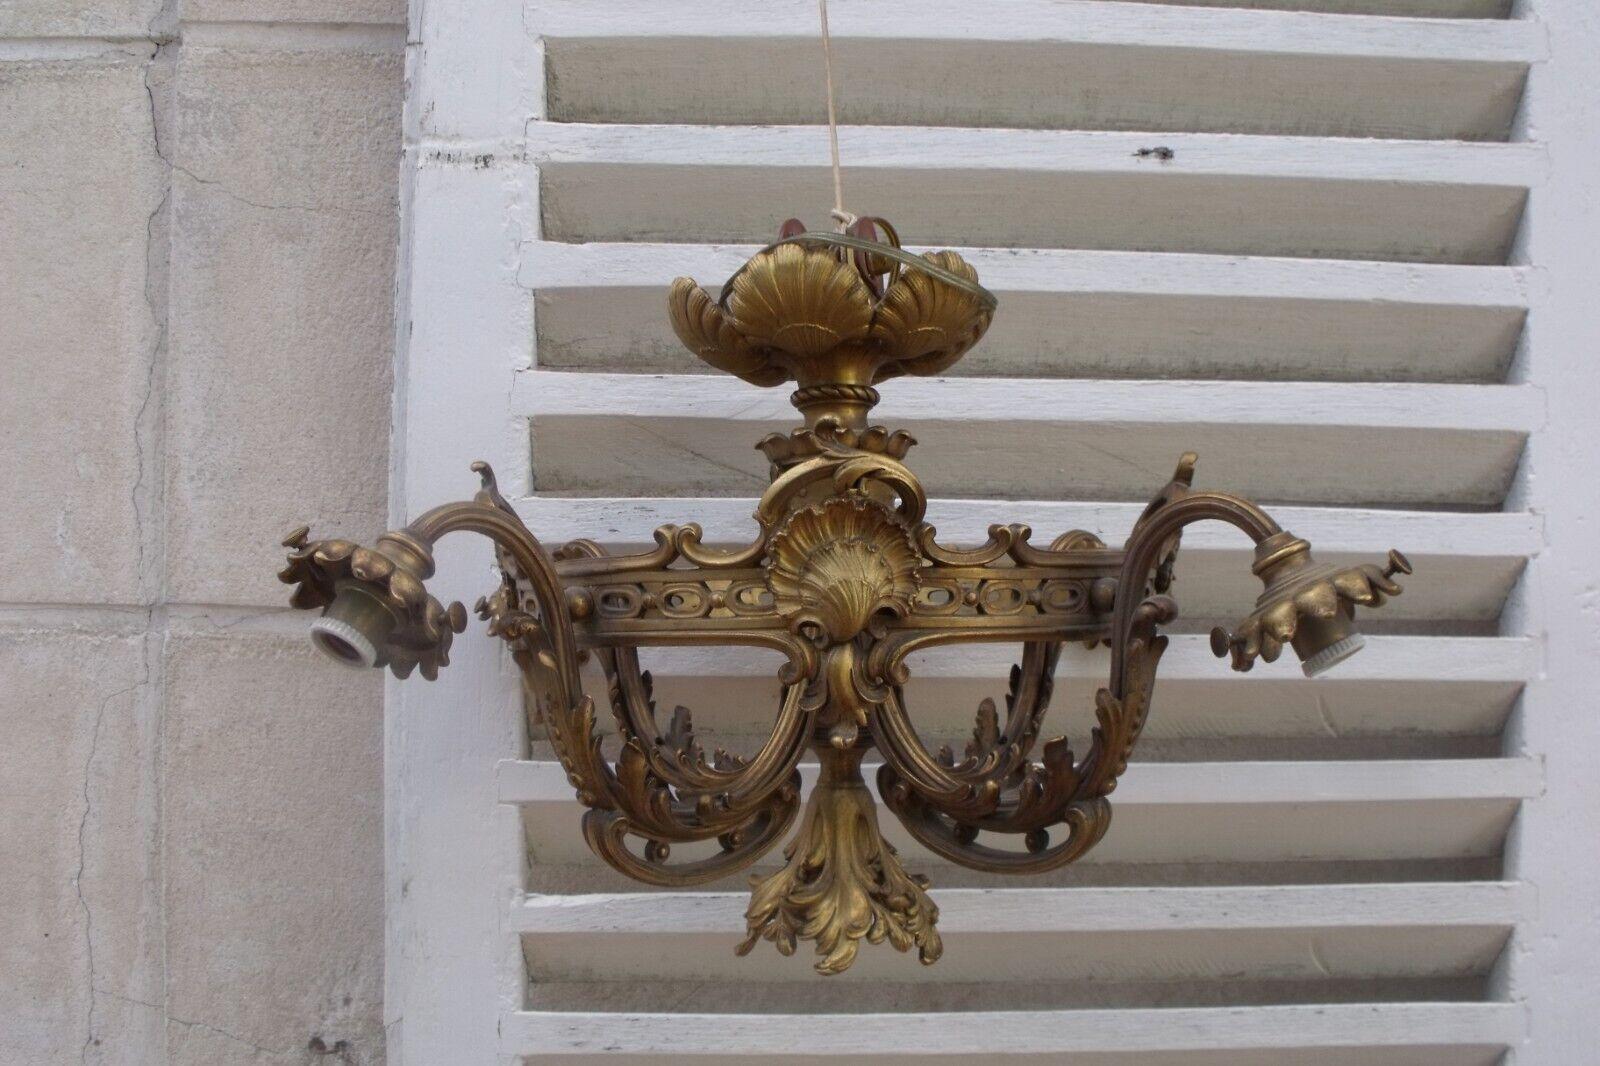 19. Jahrhundert Französisch Louis XVI Rokoko Form vergoldete Bronze Kronleuchter signiert von F. Barbedienne. Dies ist ein wirklich beeindruckender klassischer Kronleuchter. Muschel, C Scroll und weitere Rokoko-Details. 5 Lichter.